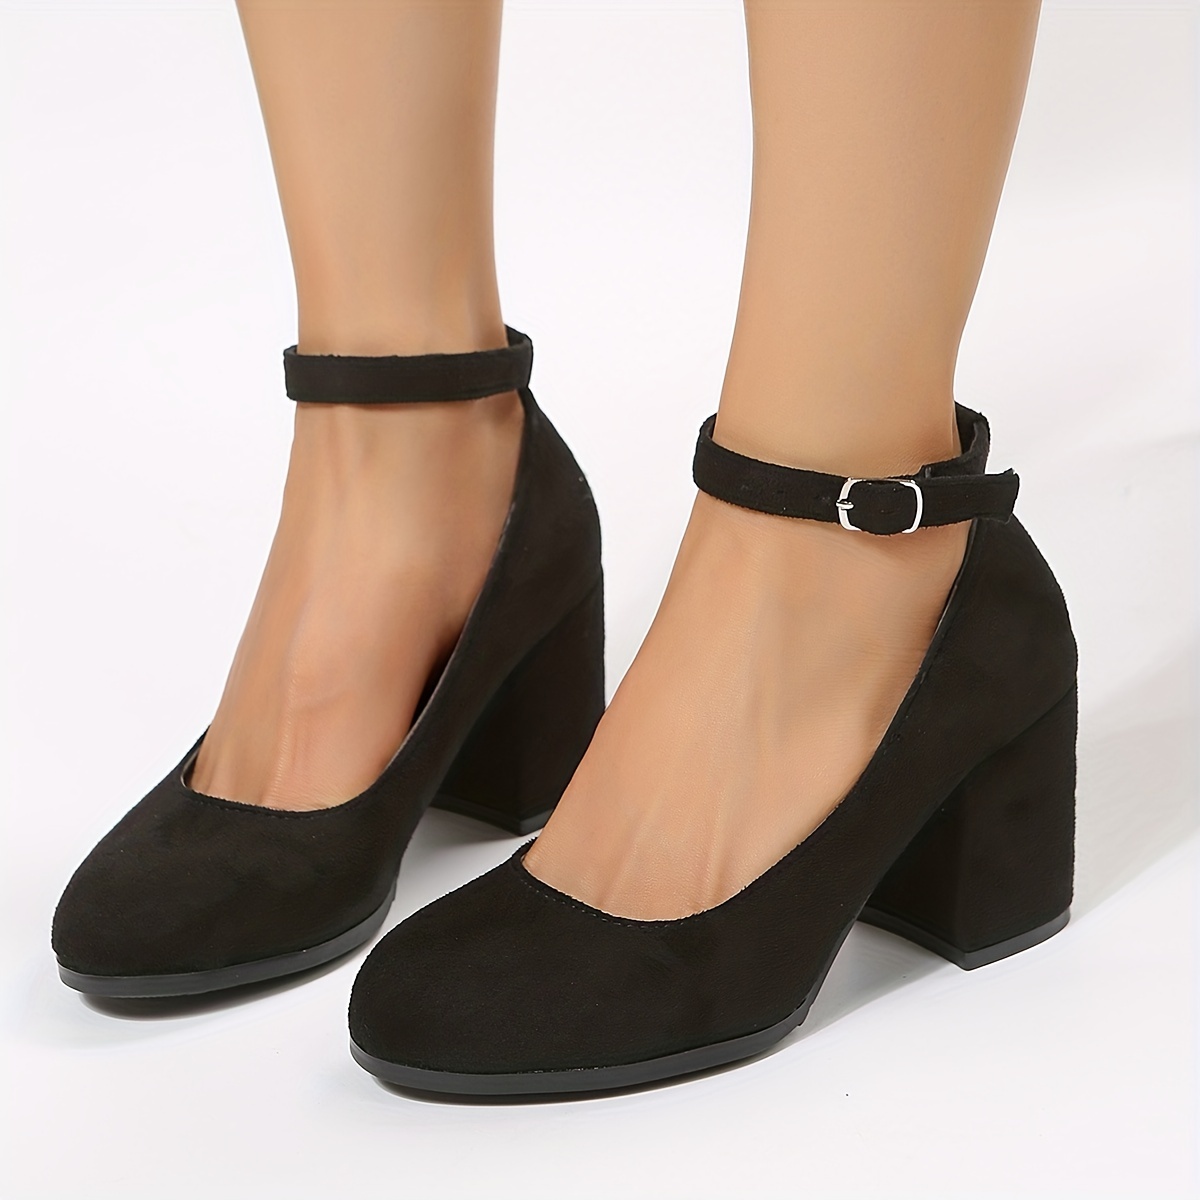 Women's Heels | Shop High Heels, Platform Sandals & Block Heels at ALDO